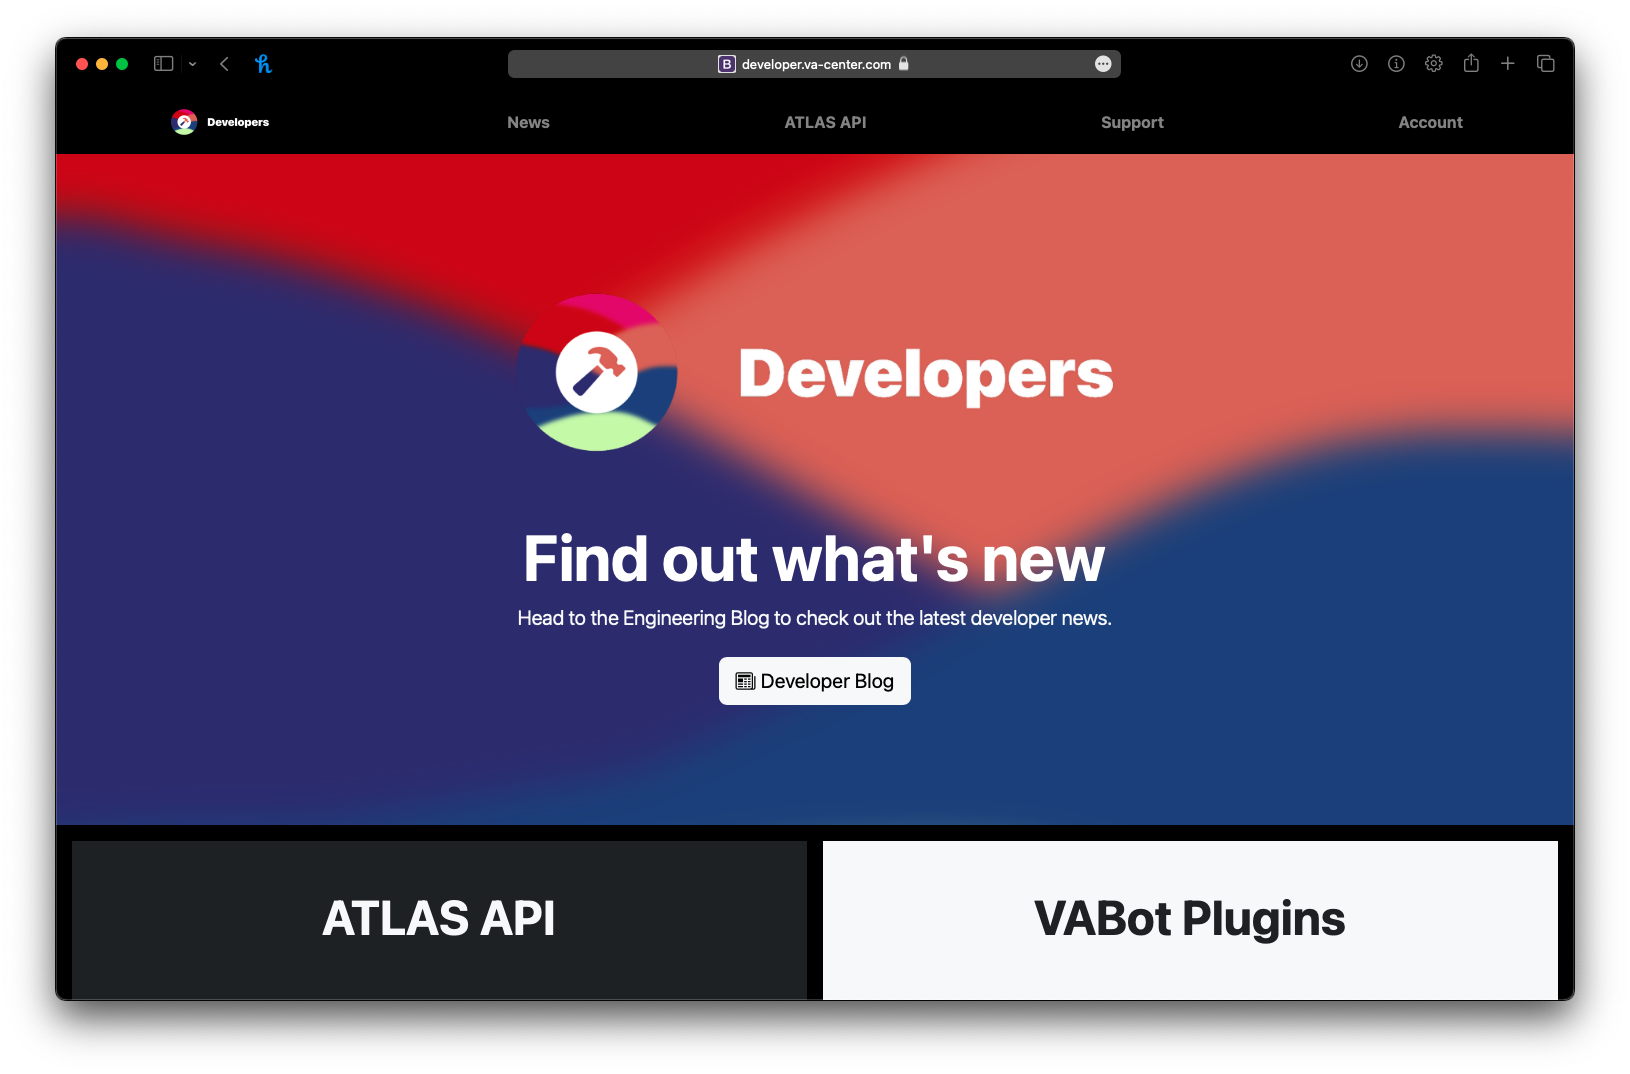 VACenter Developer Website Released